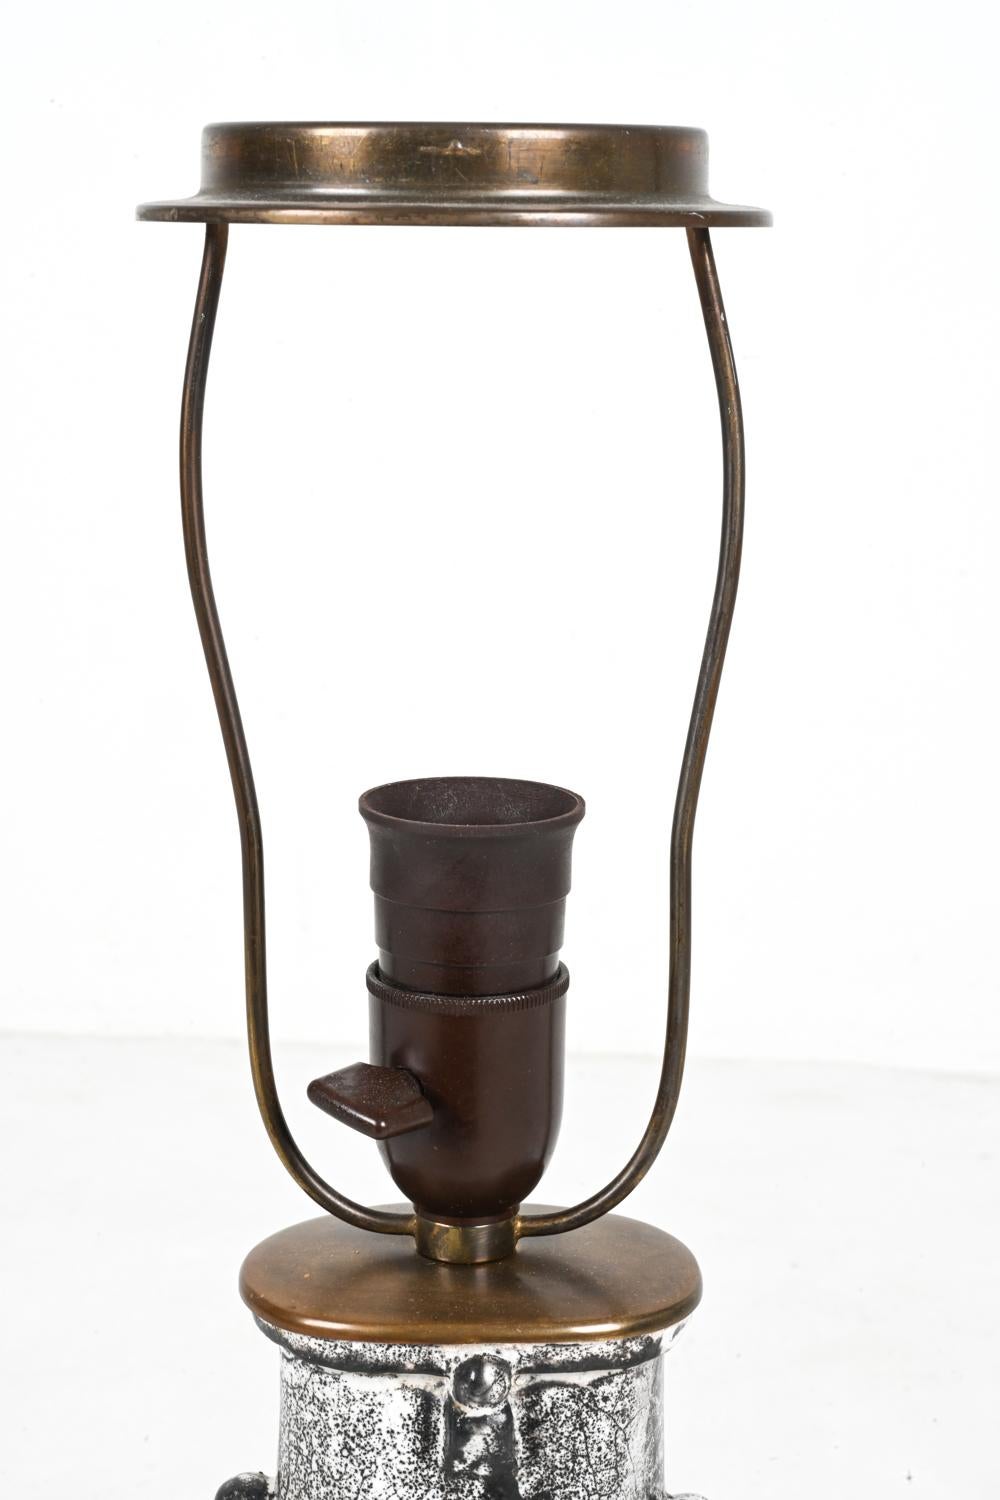 Danish Rare Studio Ceramic Lamp by Svend Hammershøi for Kähler, Denmark, c. 1940 For Sale